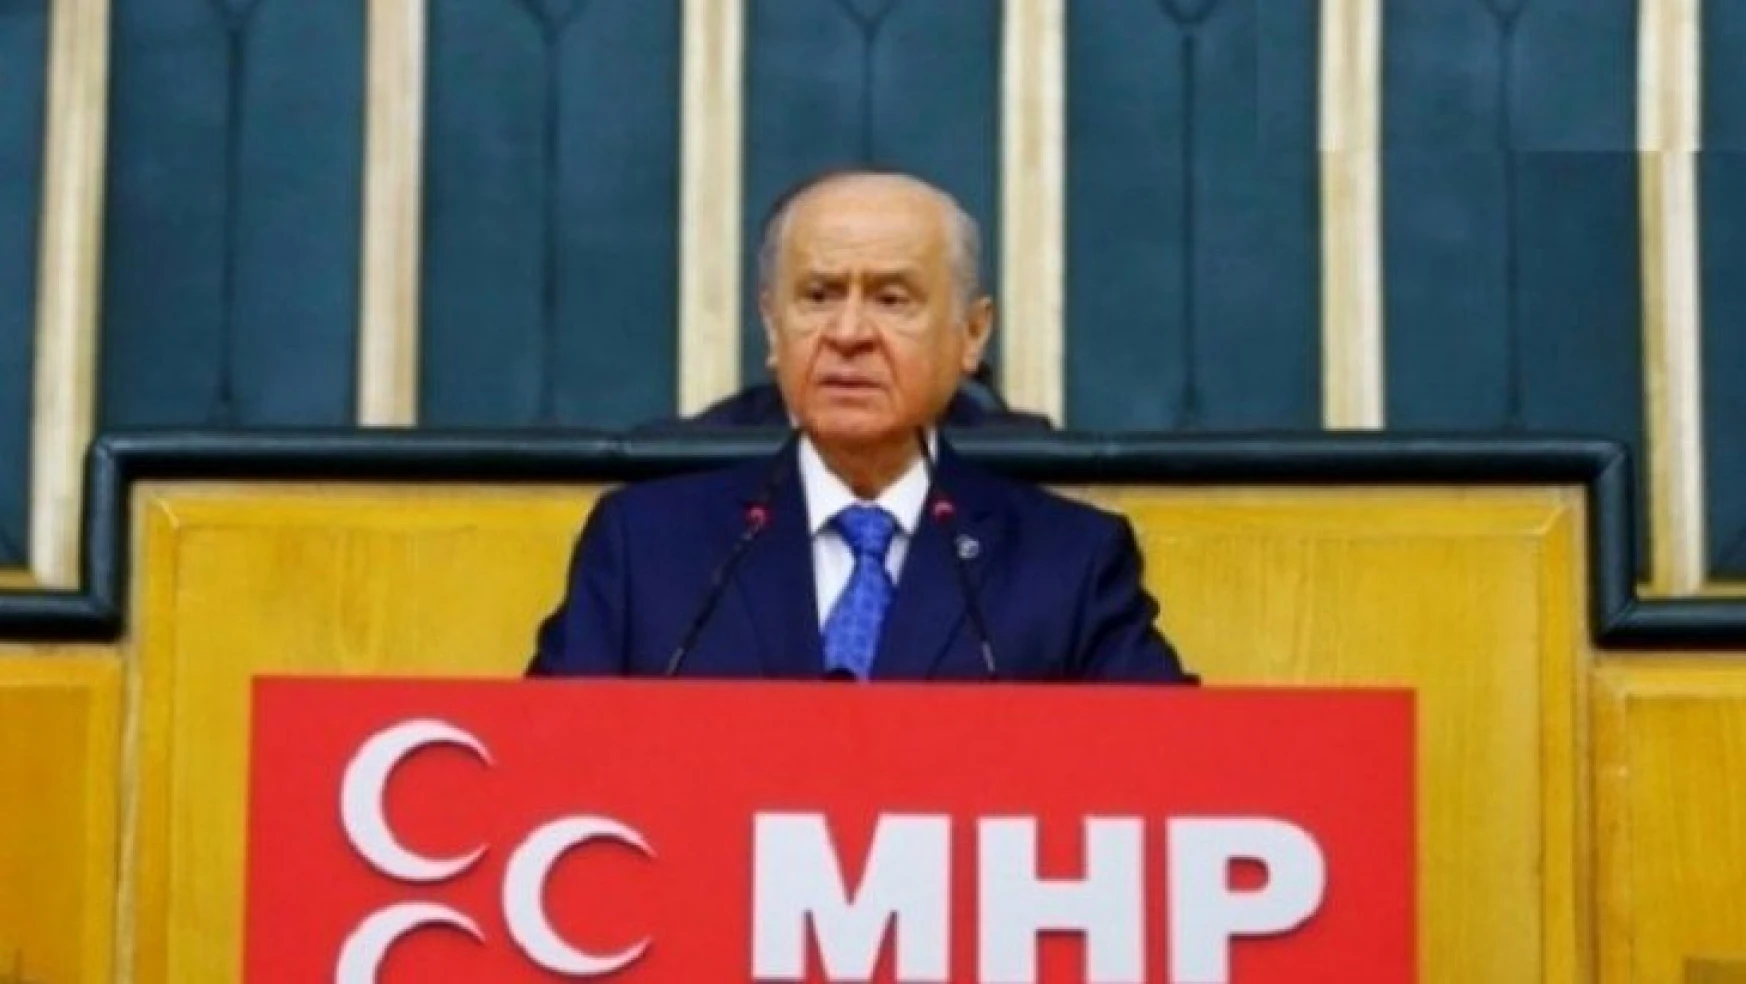 MHP Lideri Bahçeli: Milliyetçi Hareket Partisi'ne sosyal medyadan istikamet çizilemez